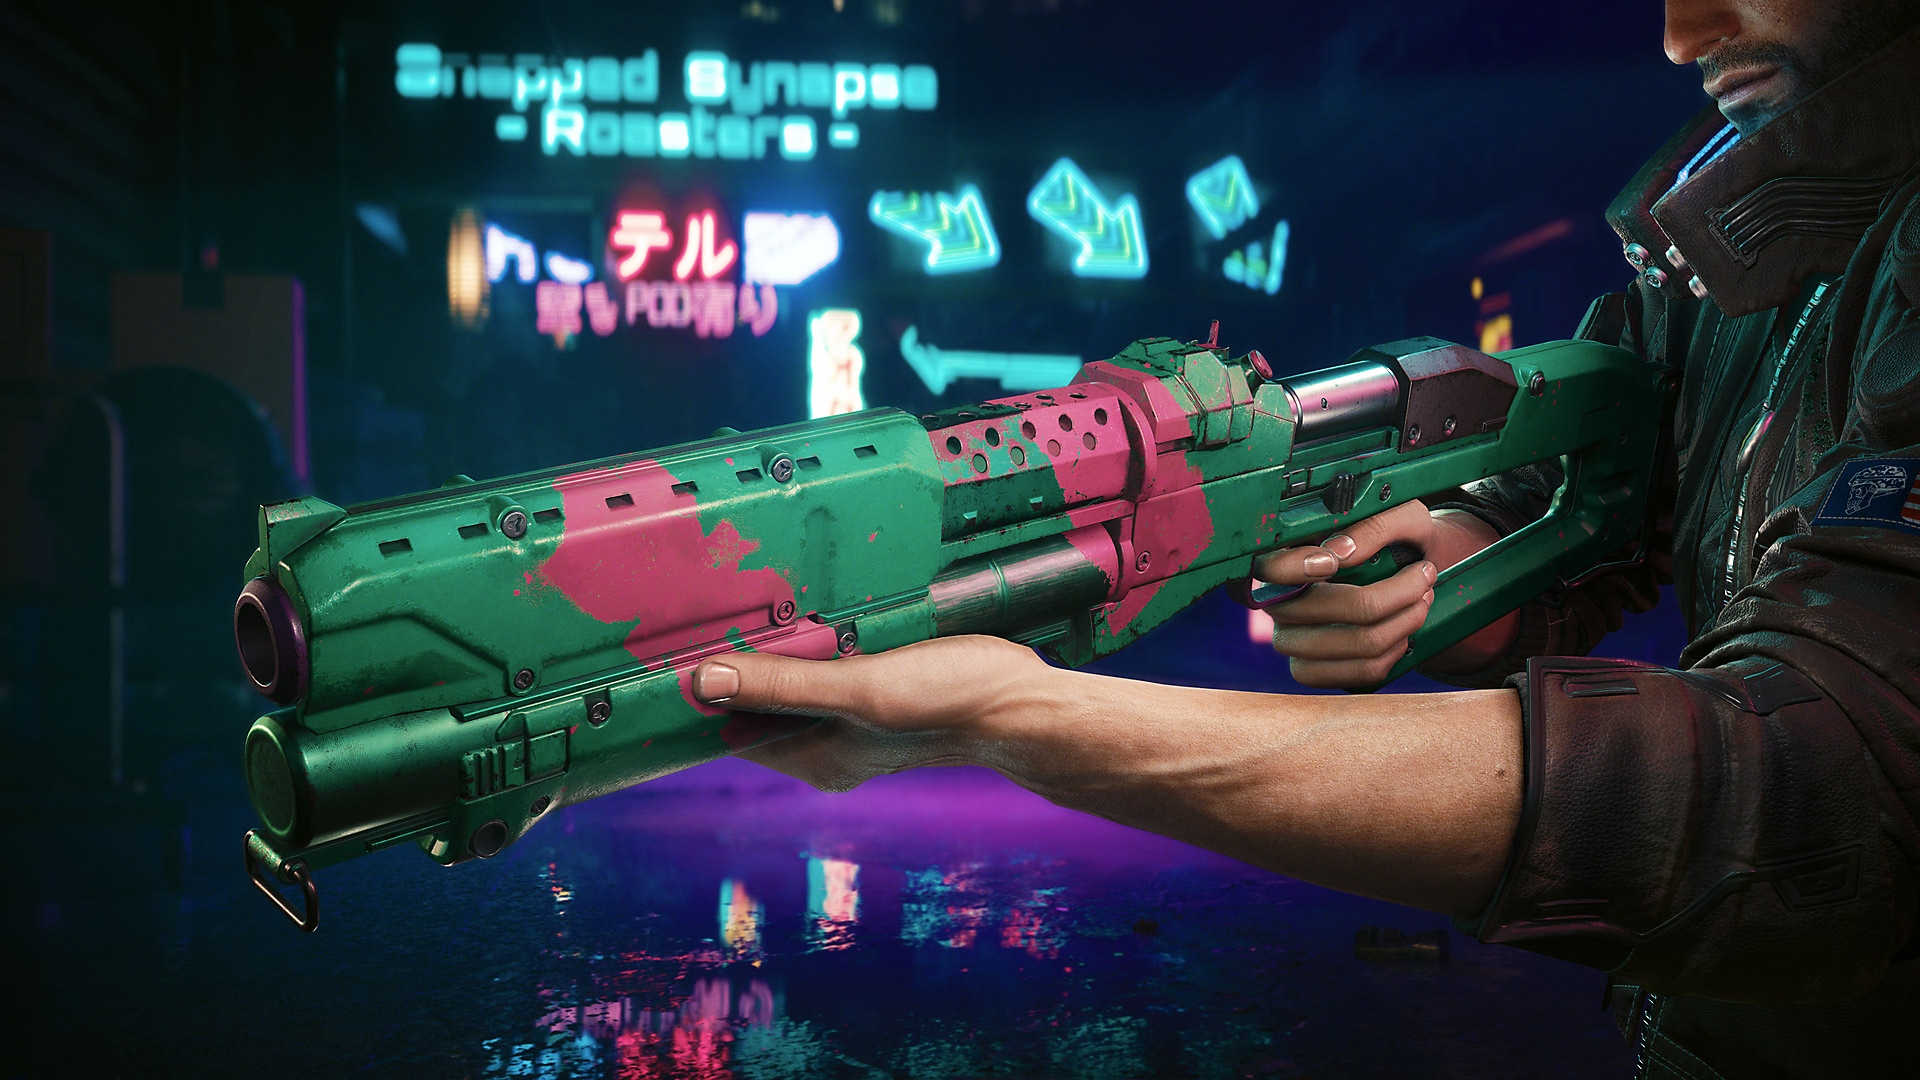 Cyberpunk 2077: Edgerunners-update met een groen-roze geweer